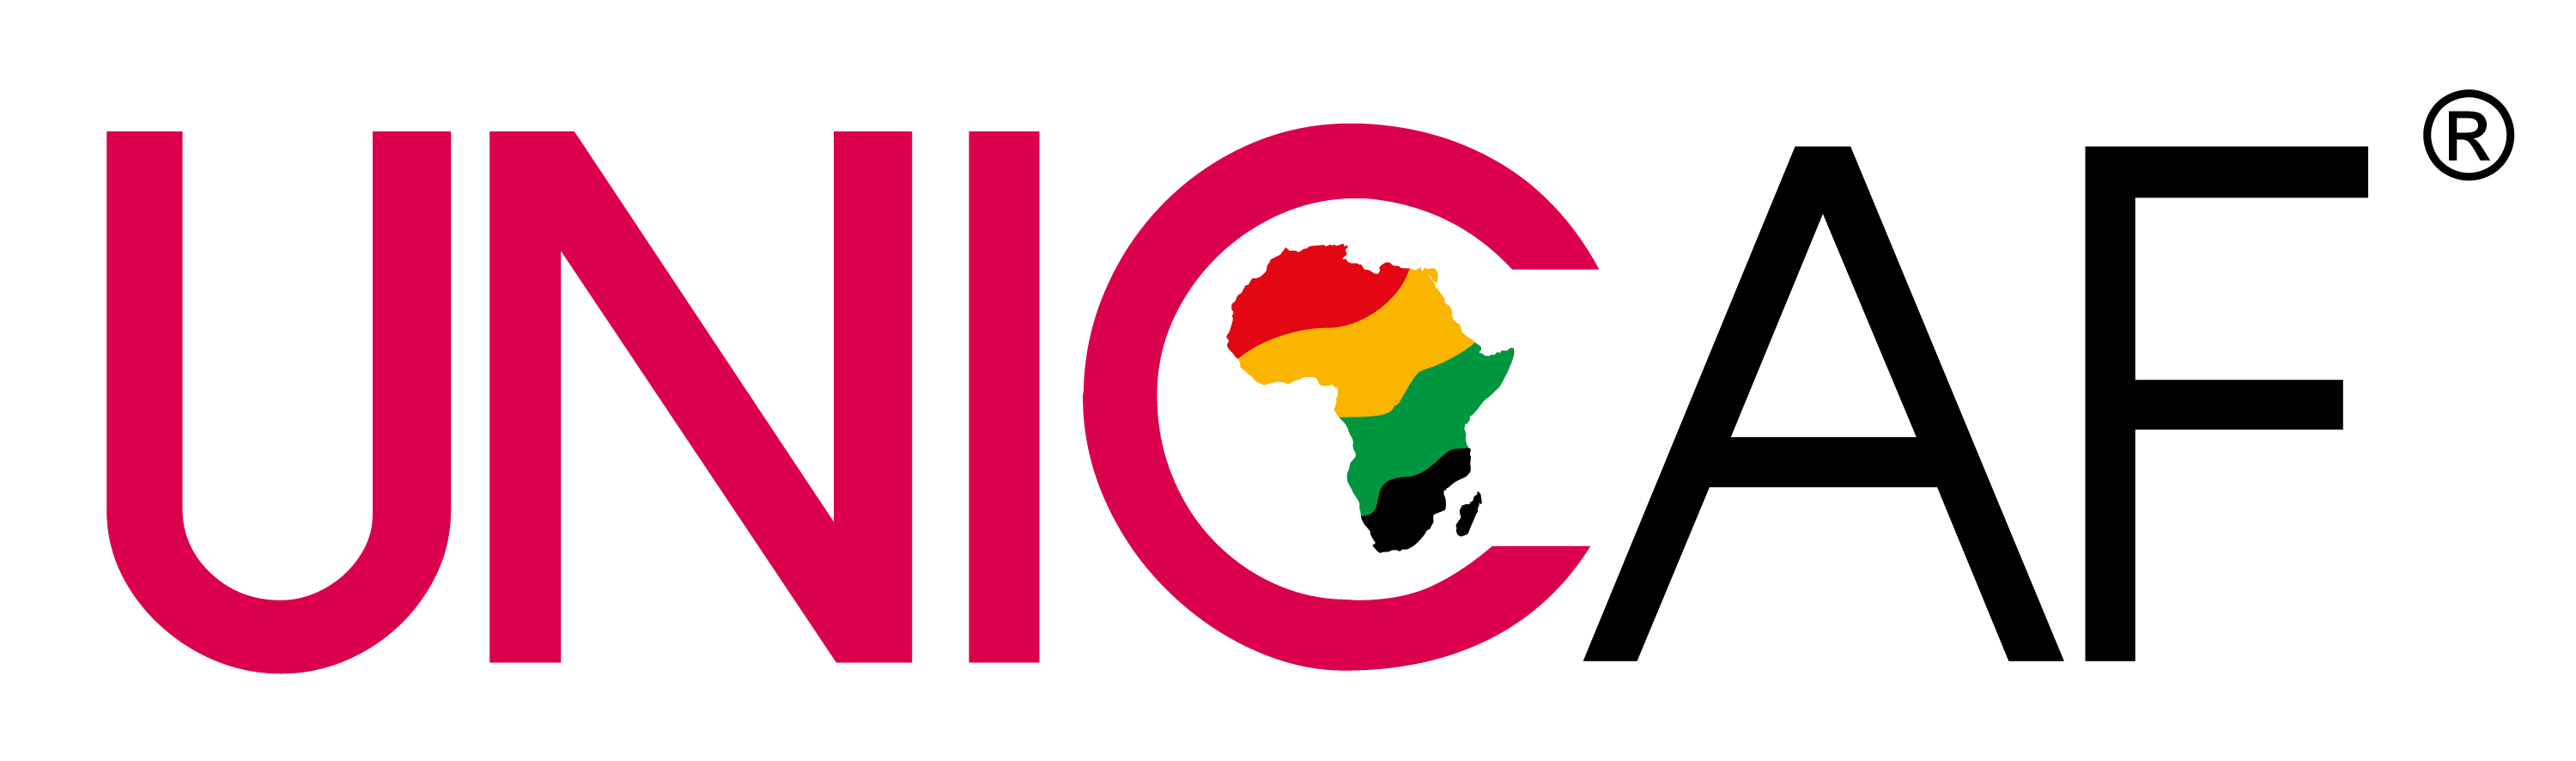 Unicaf-logo.1 (1) (2) (1)